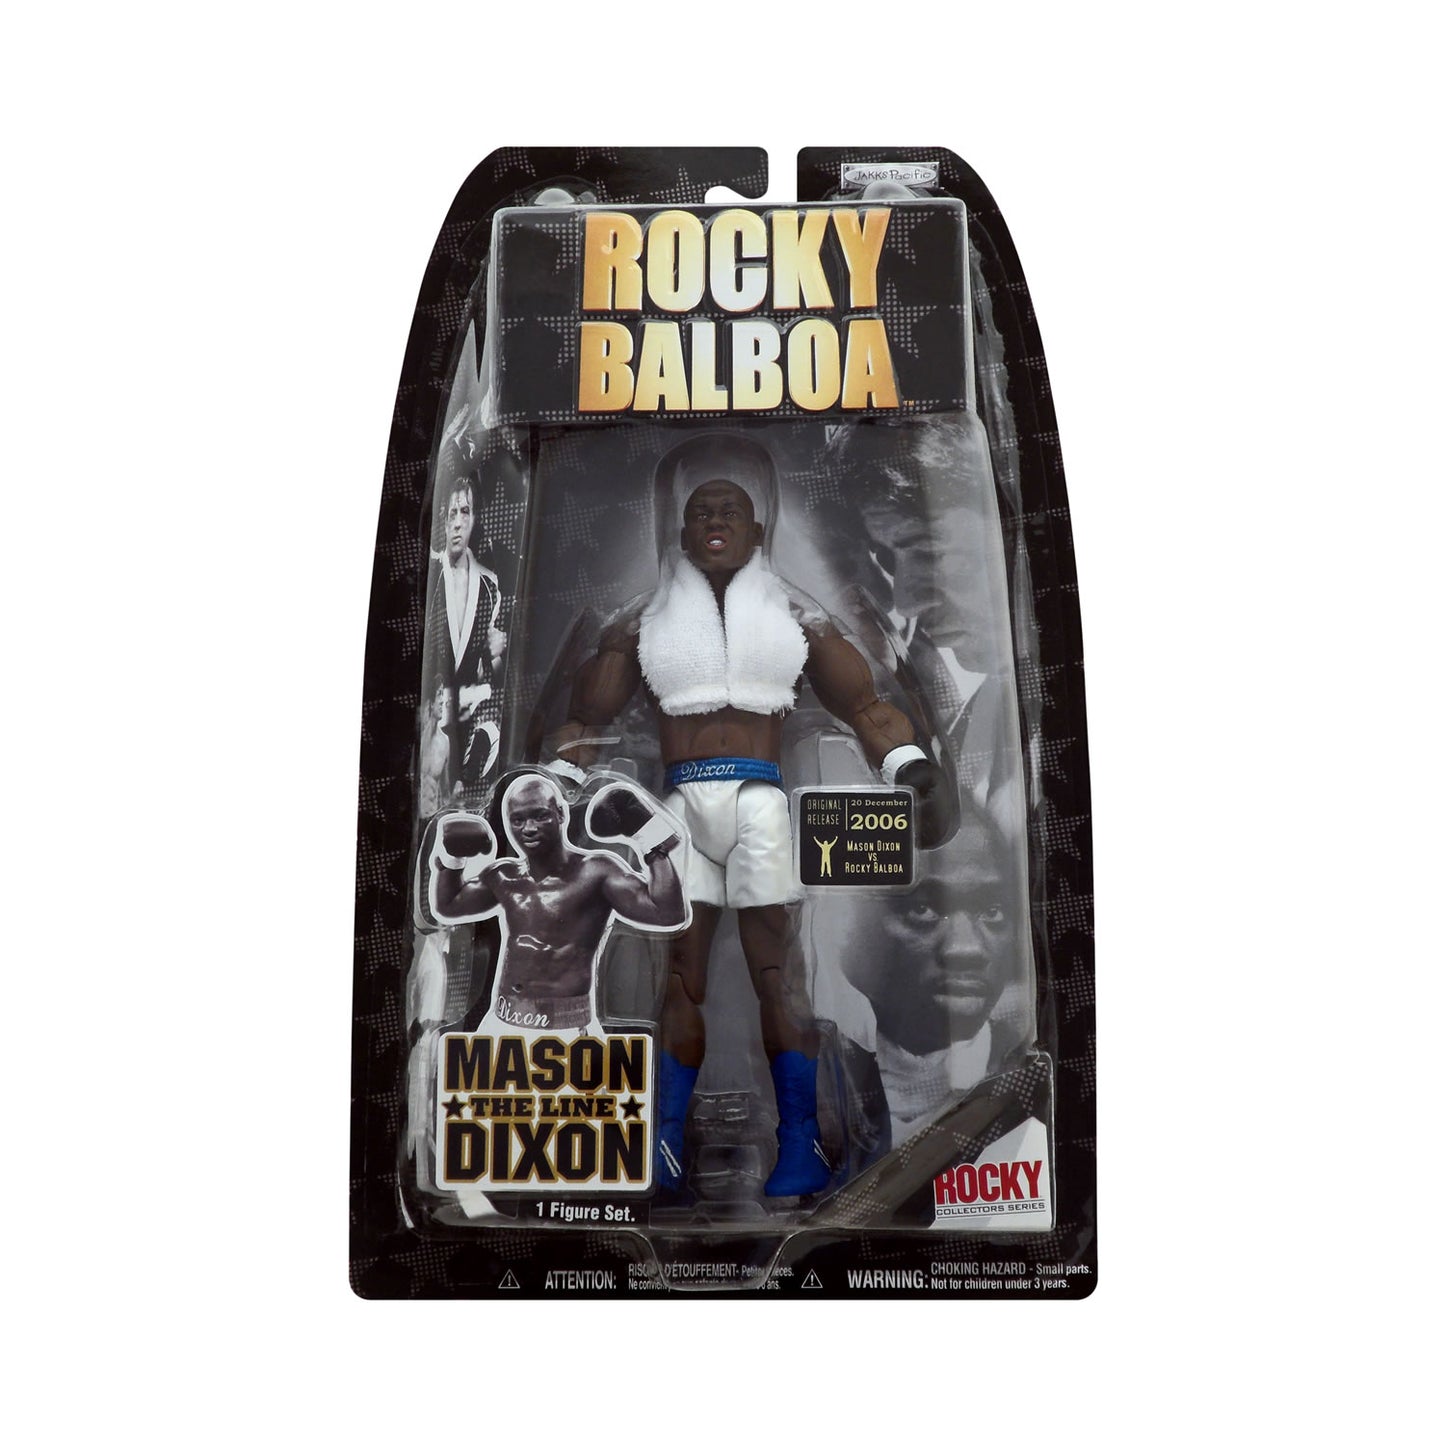 Rocky Balboa Mason "The Line" Dixon (vs. Rocky Balboa Ring Gear)